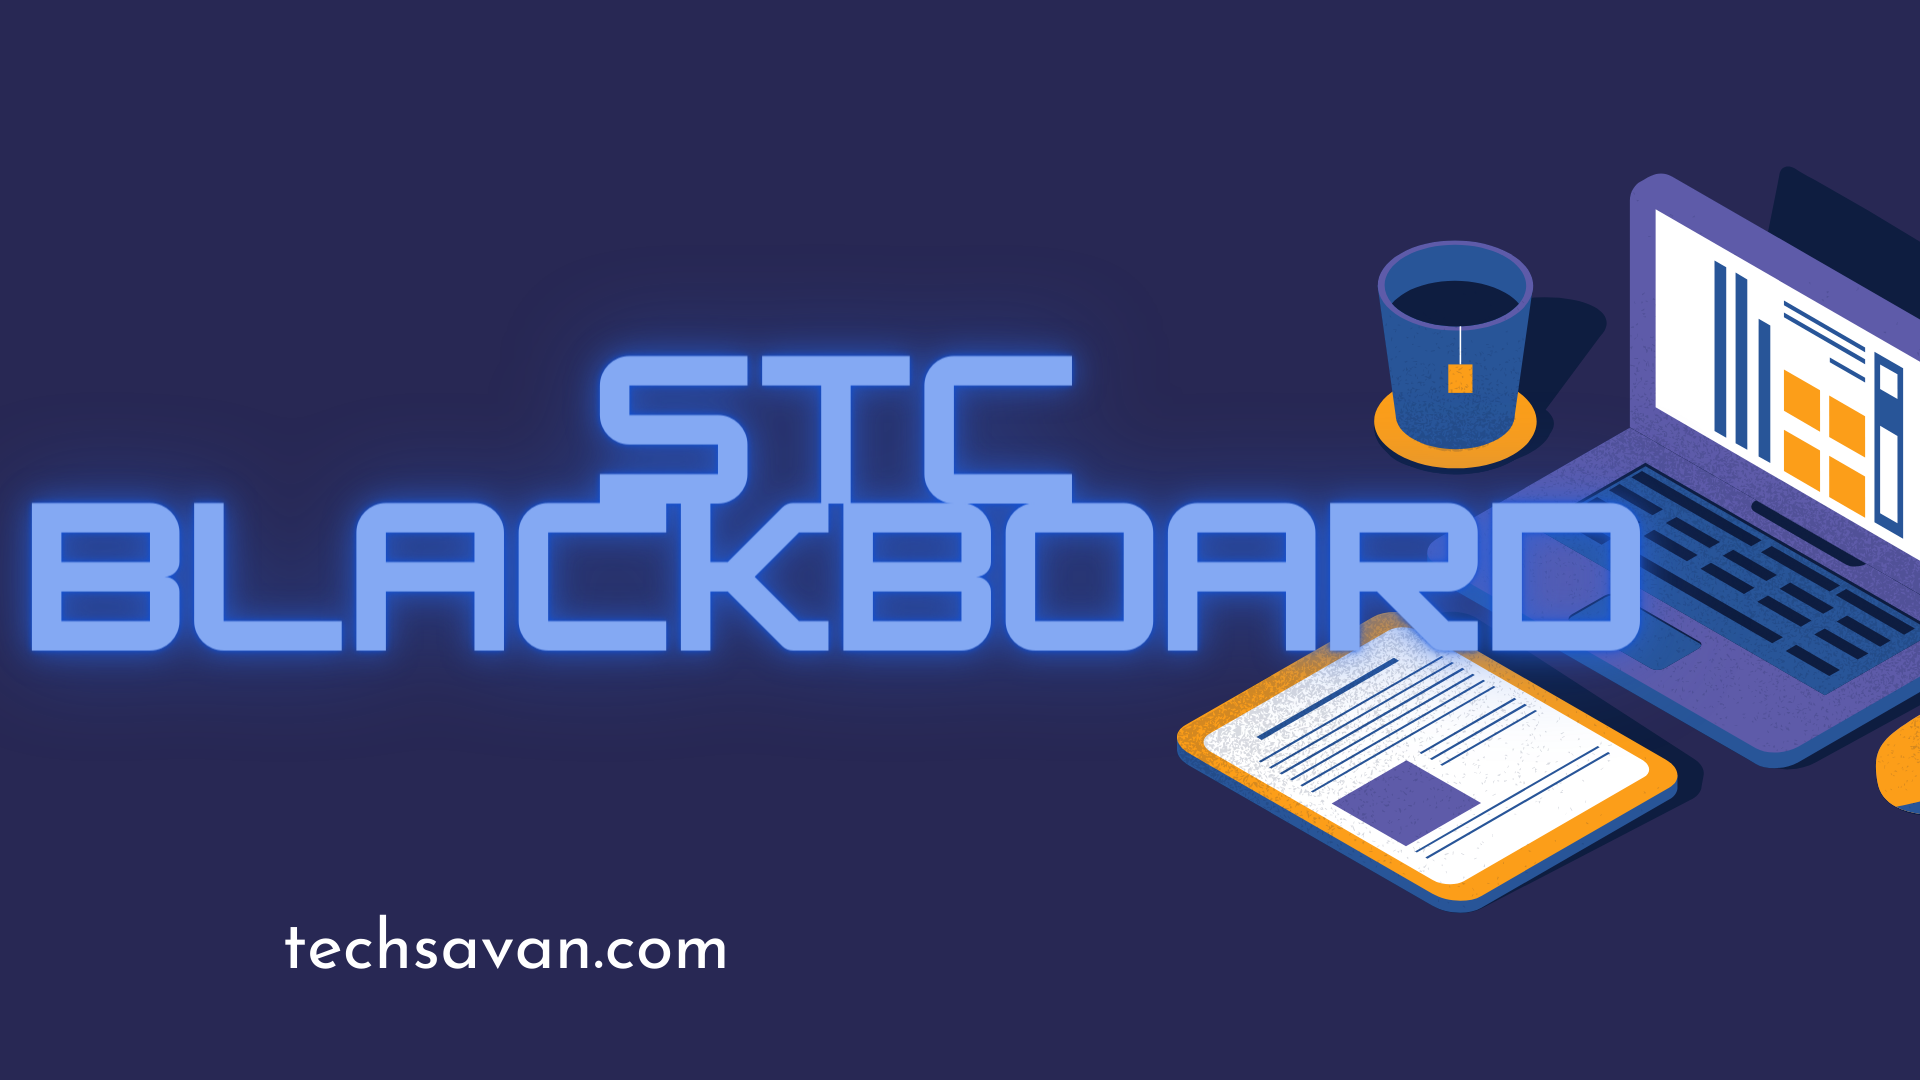 stc blackboard